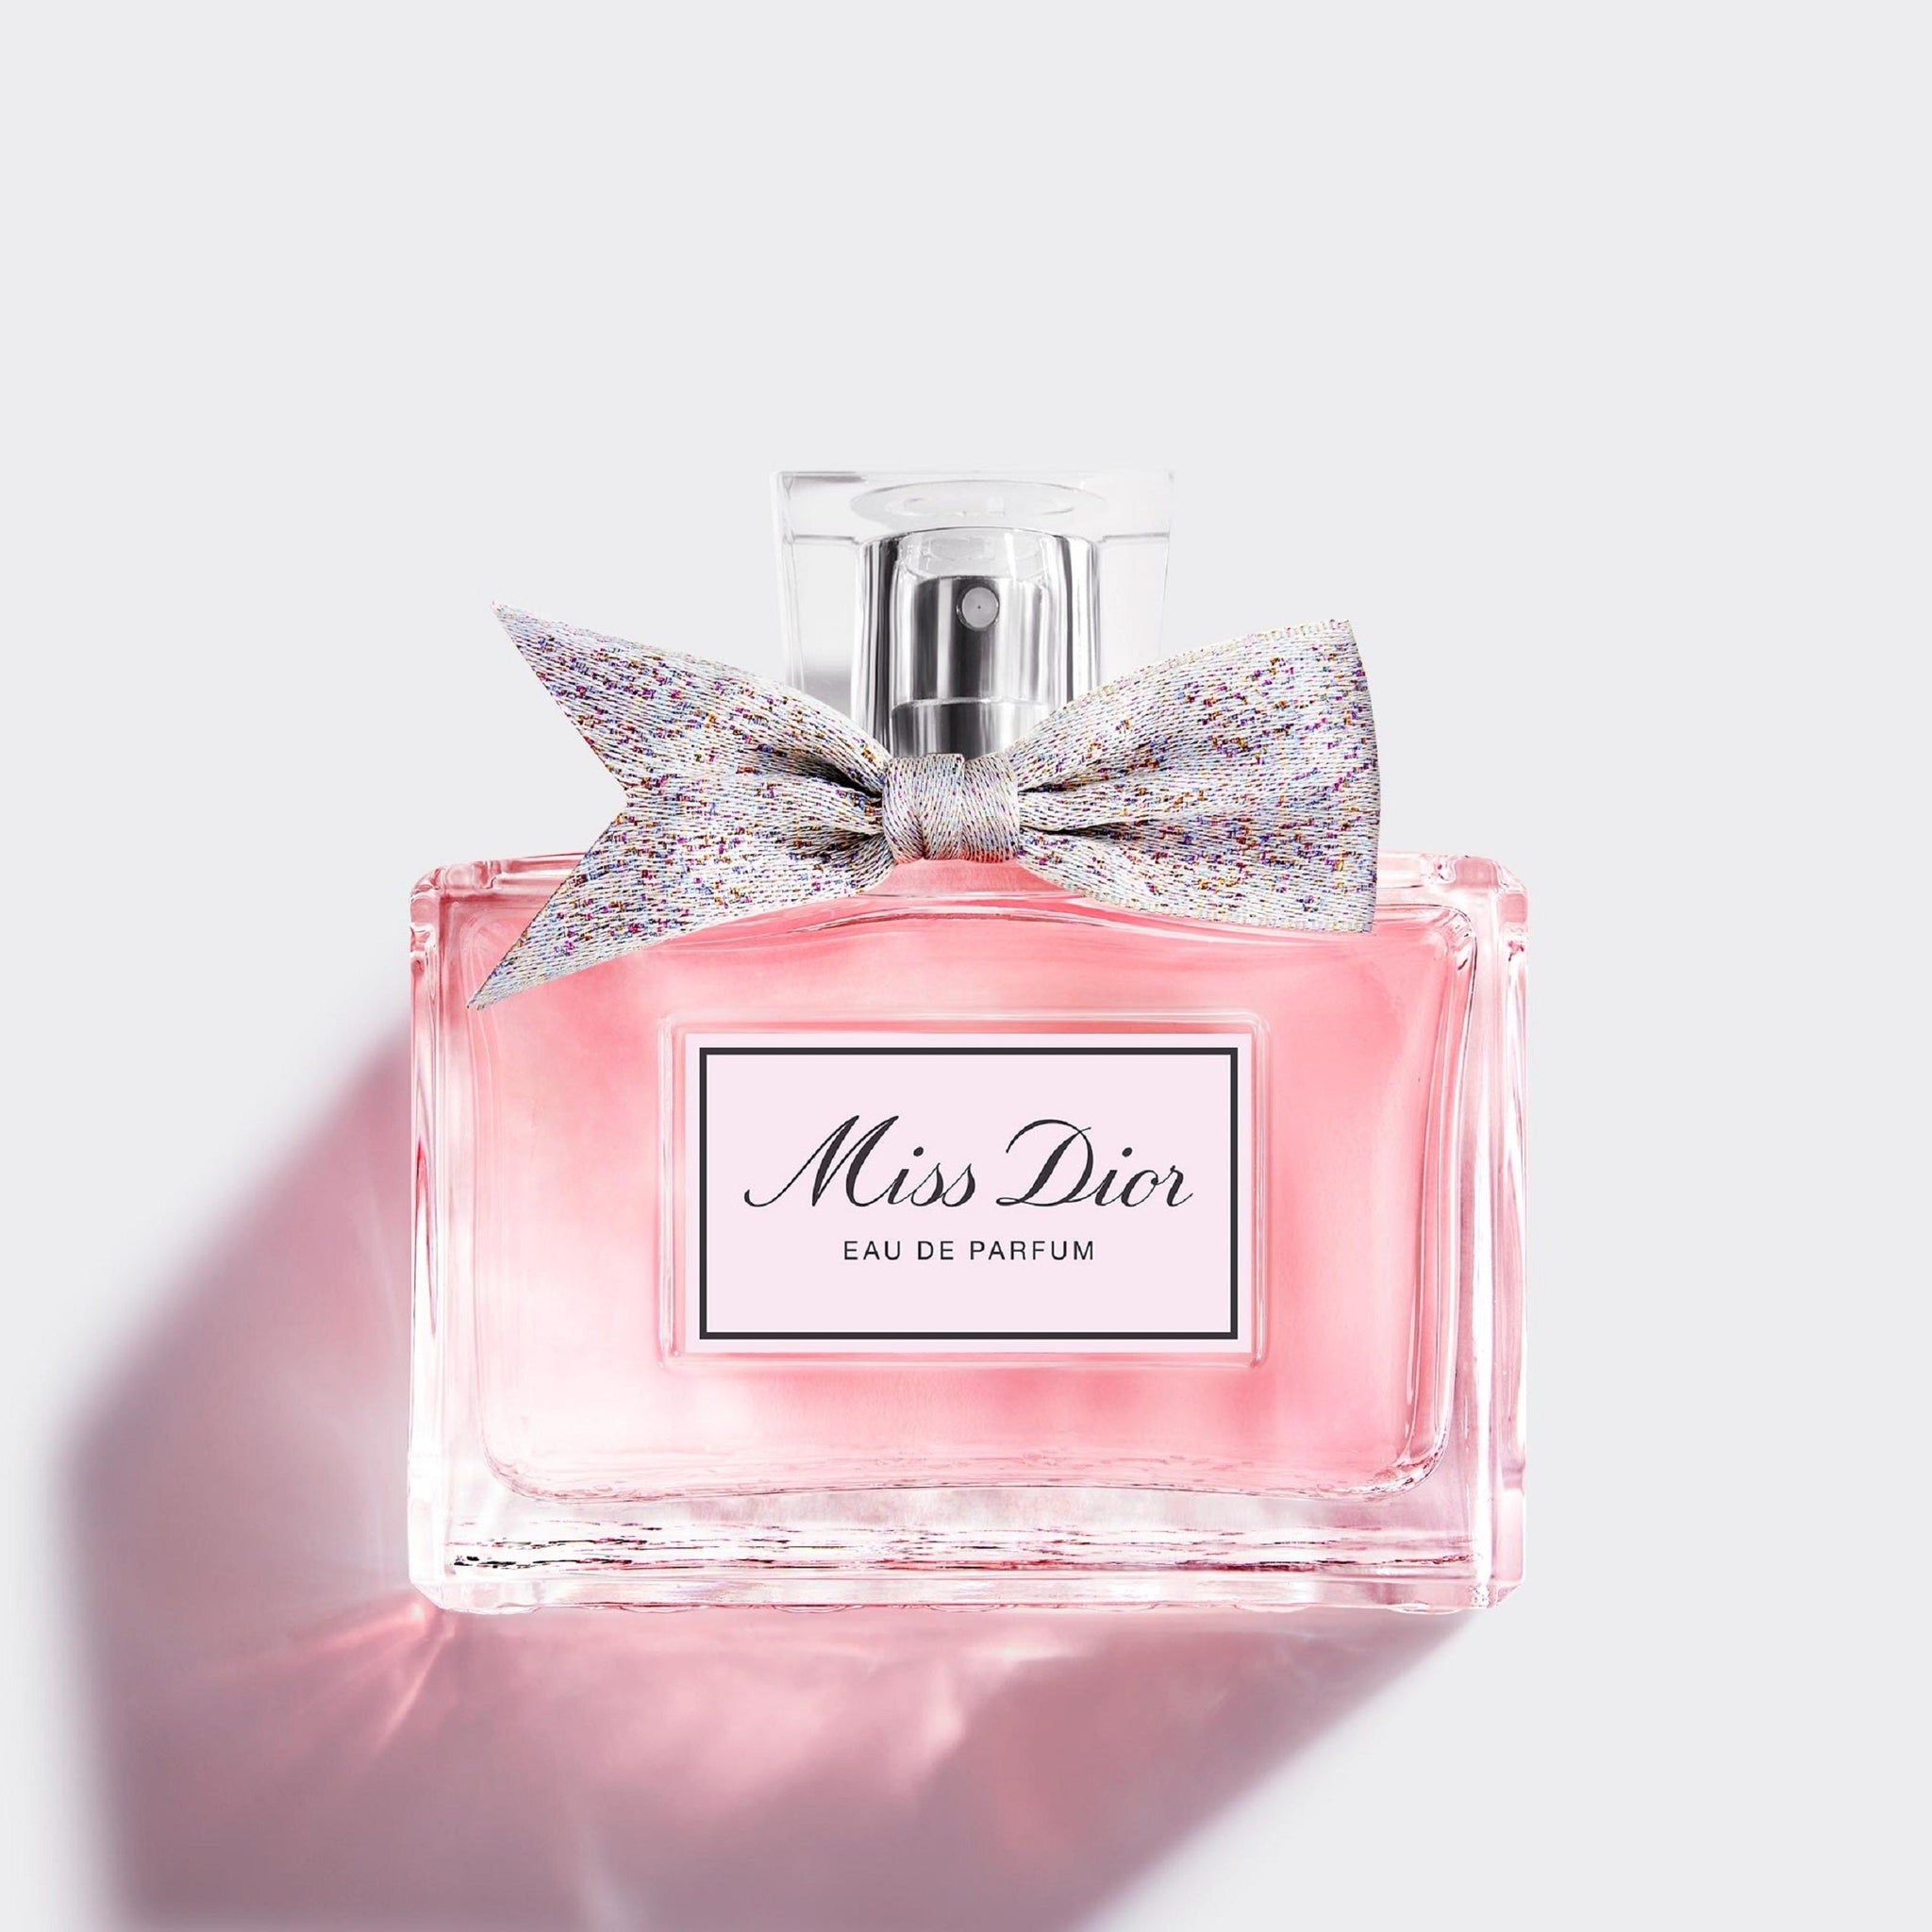 MISS DIOR | Eau de parfum - floral and fresh notes